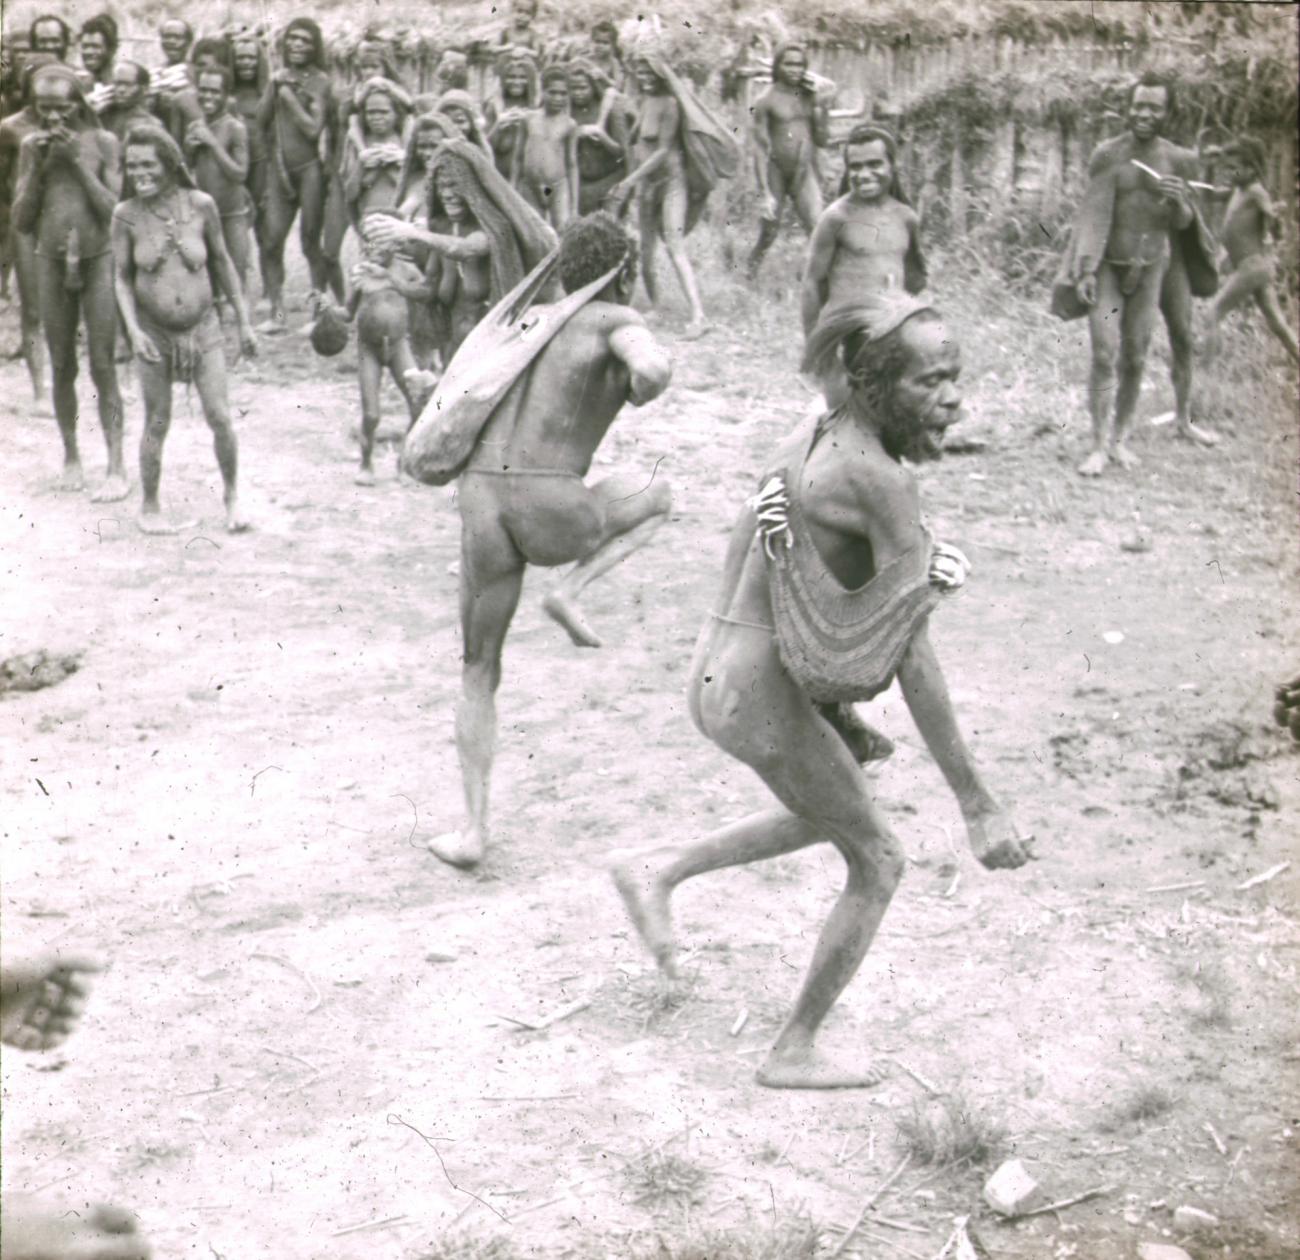 BD/329/27 - 
Twee Papoea-mannen voeren een dans uit onder toezien van stamgenoten
